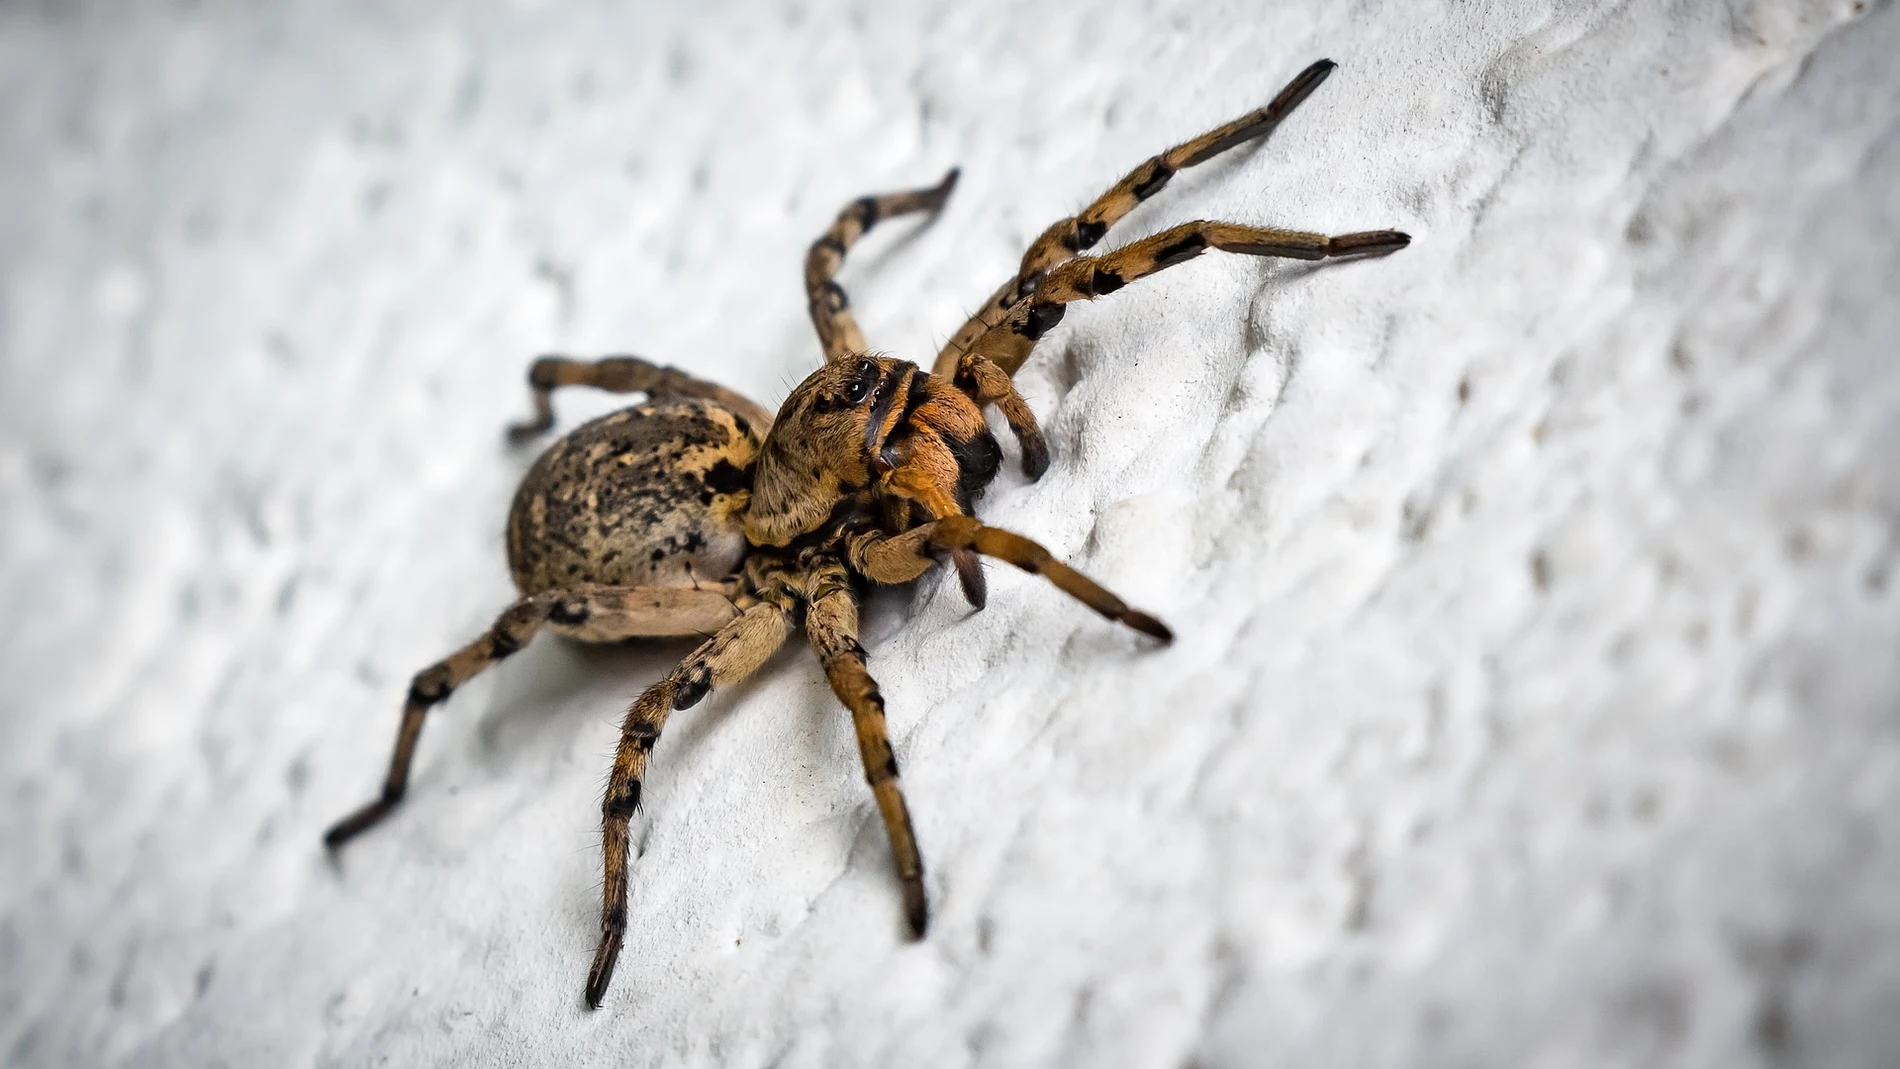 Estos son los hábitos de limpieza que debes evitar para no convertir tu hogar en un refugio de arañas